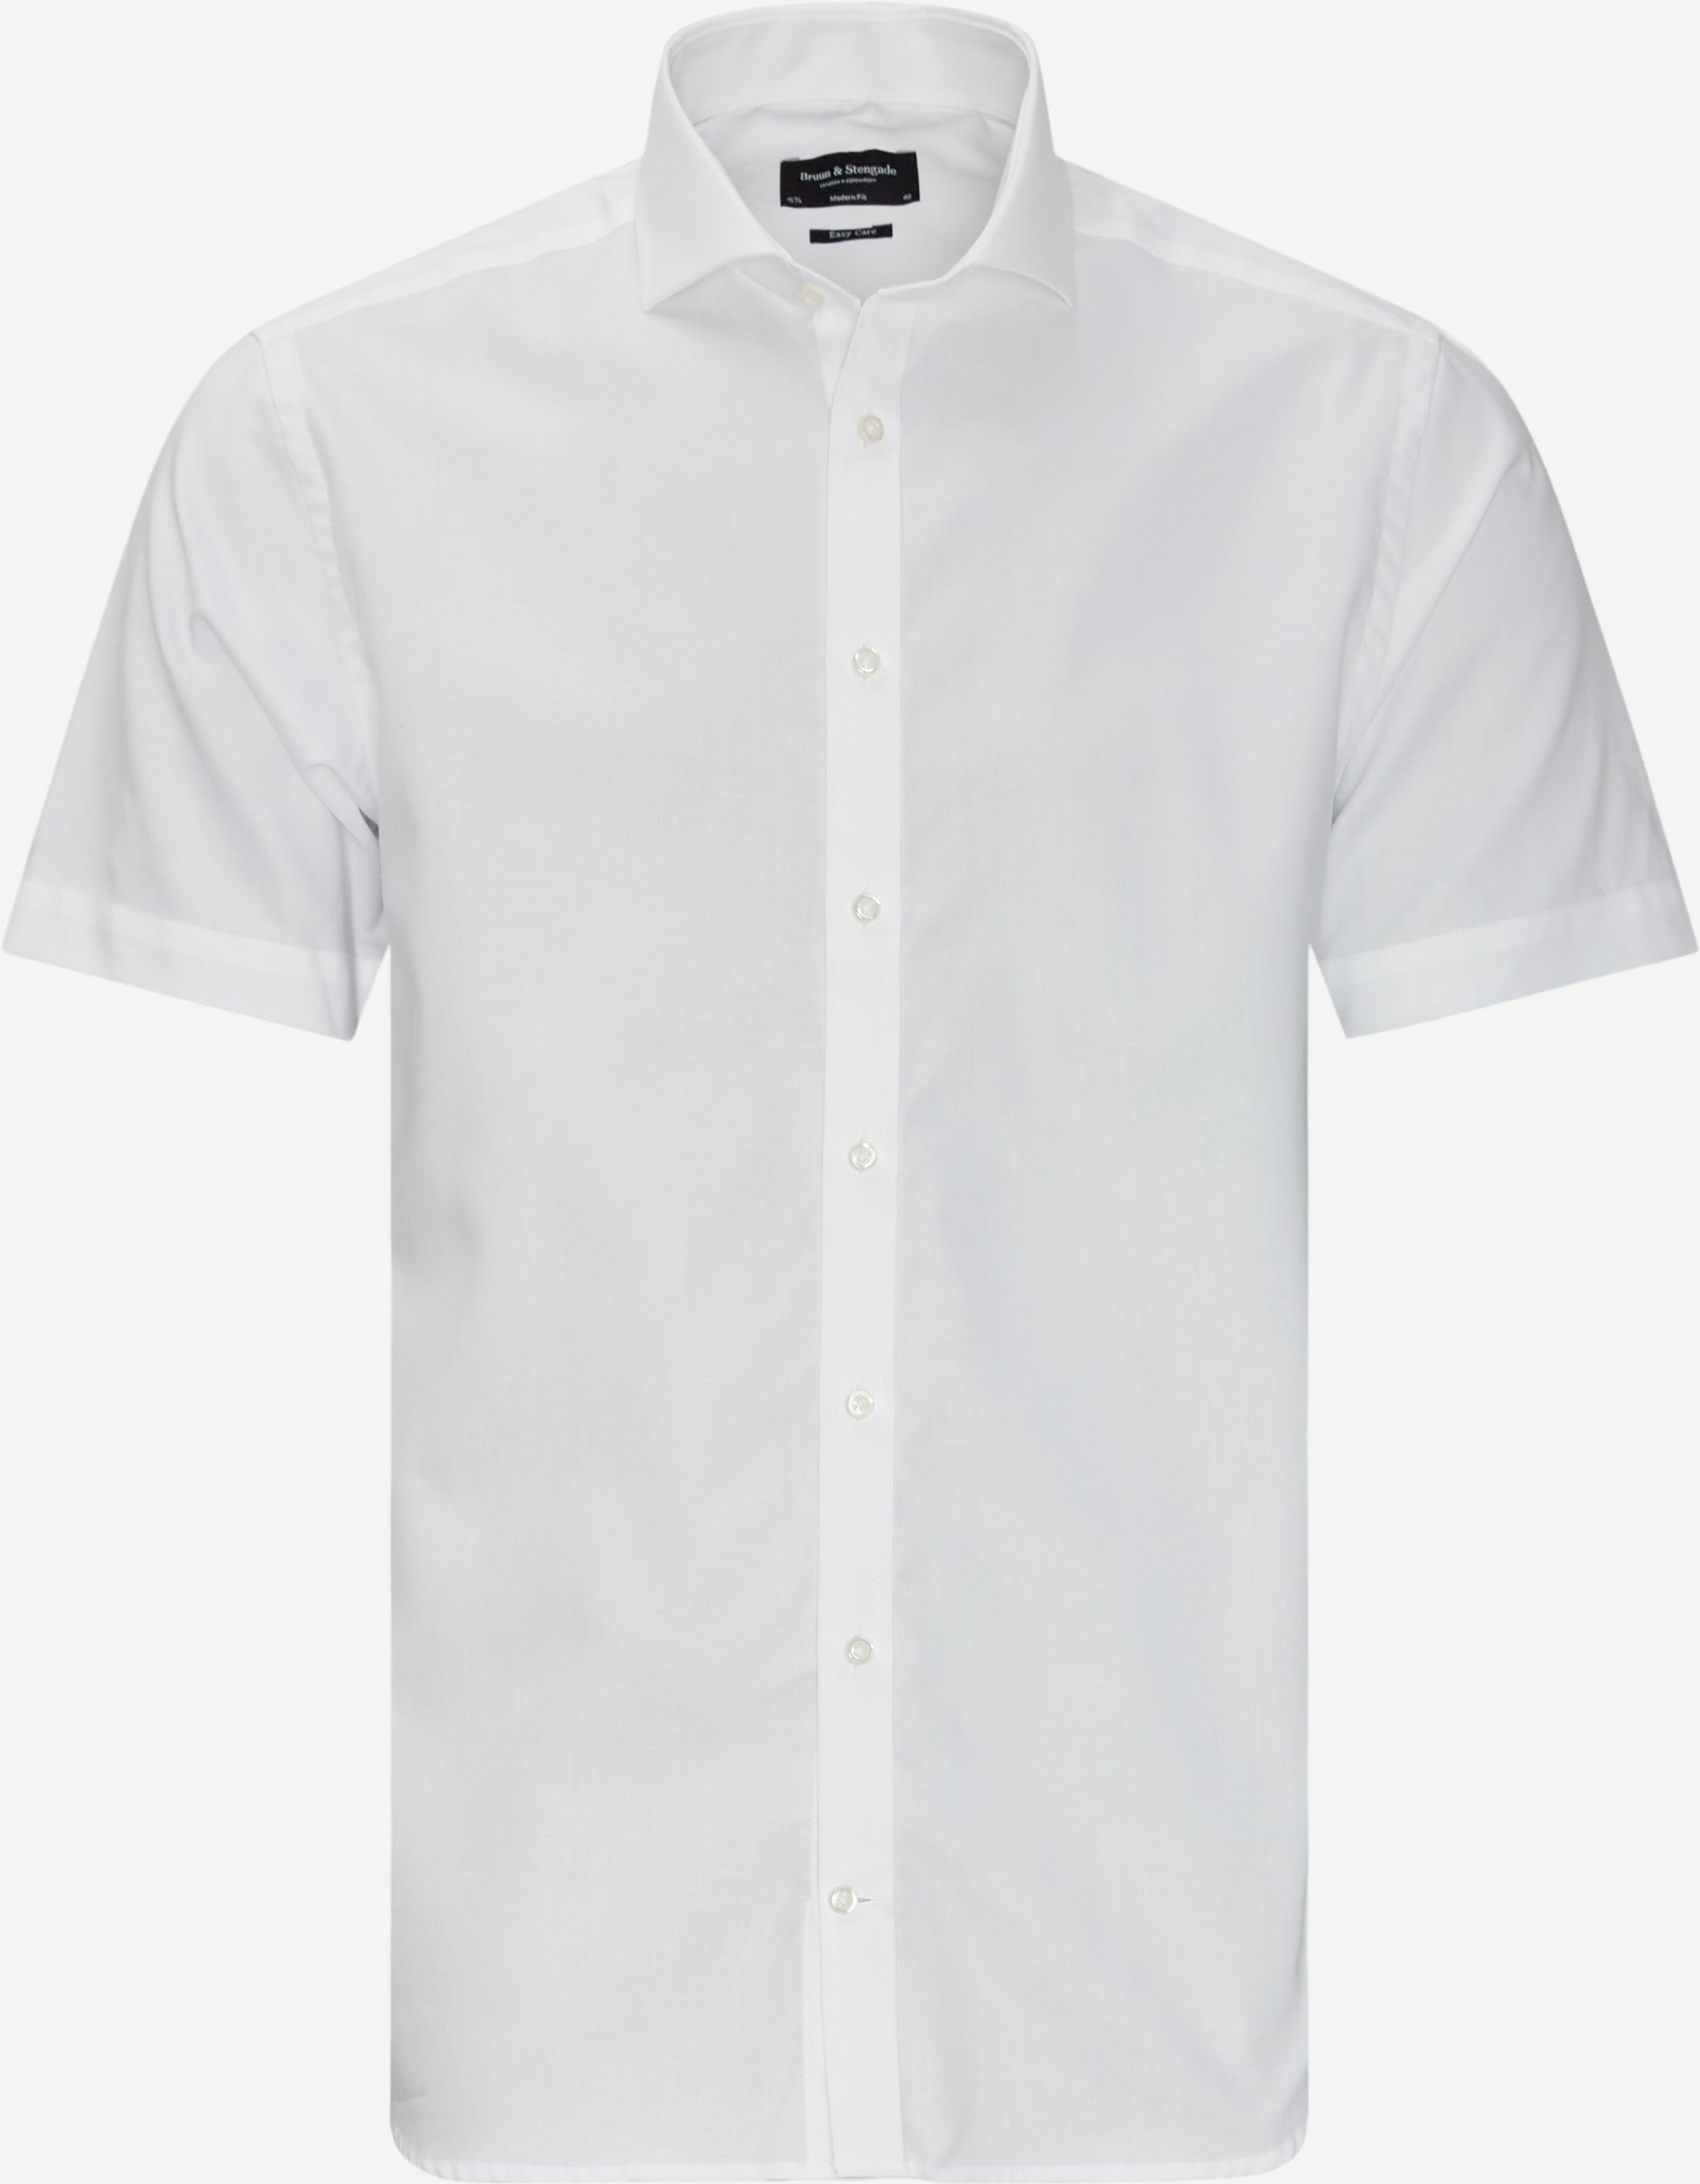 Kortärmade skjortor - Modern fit - Vit